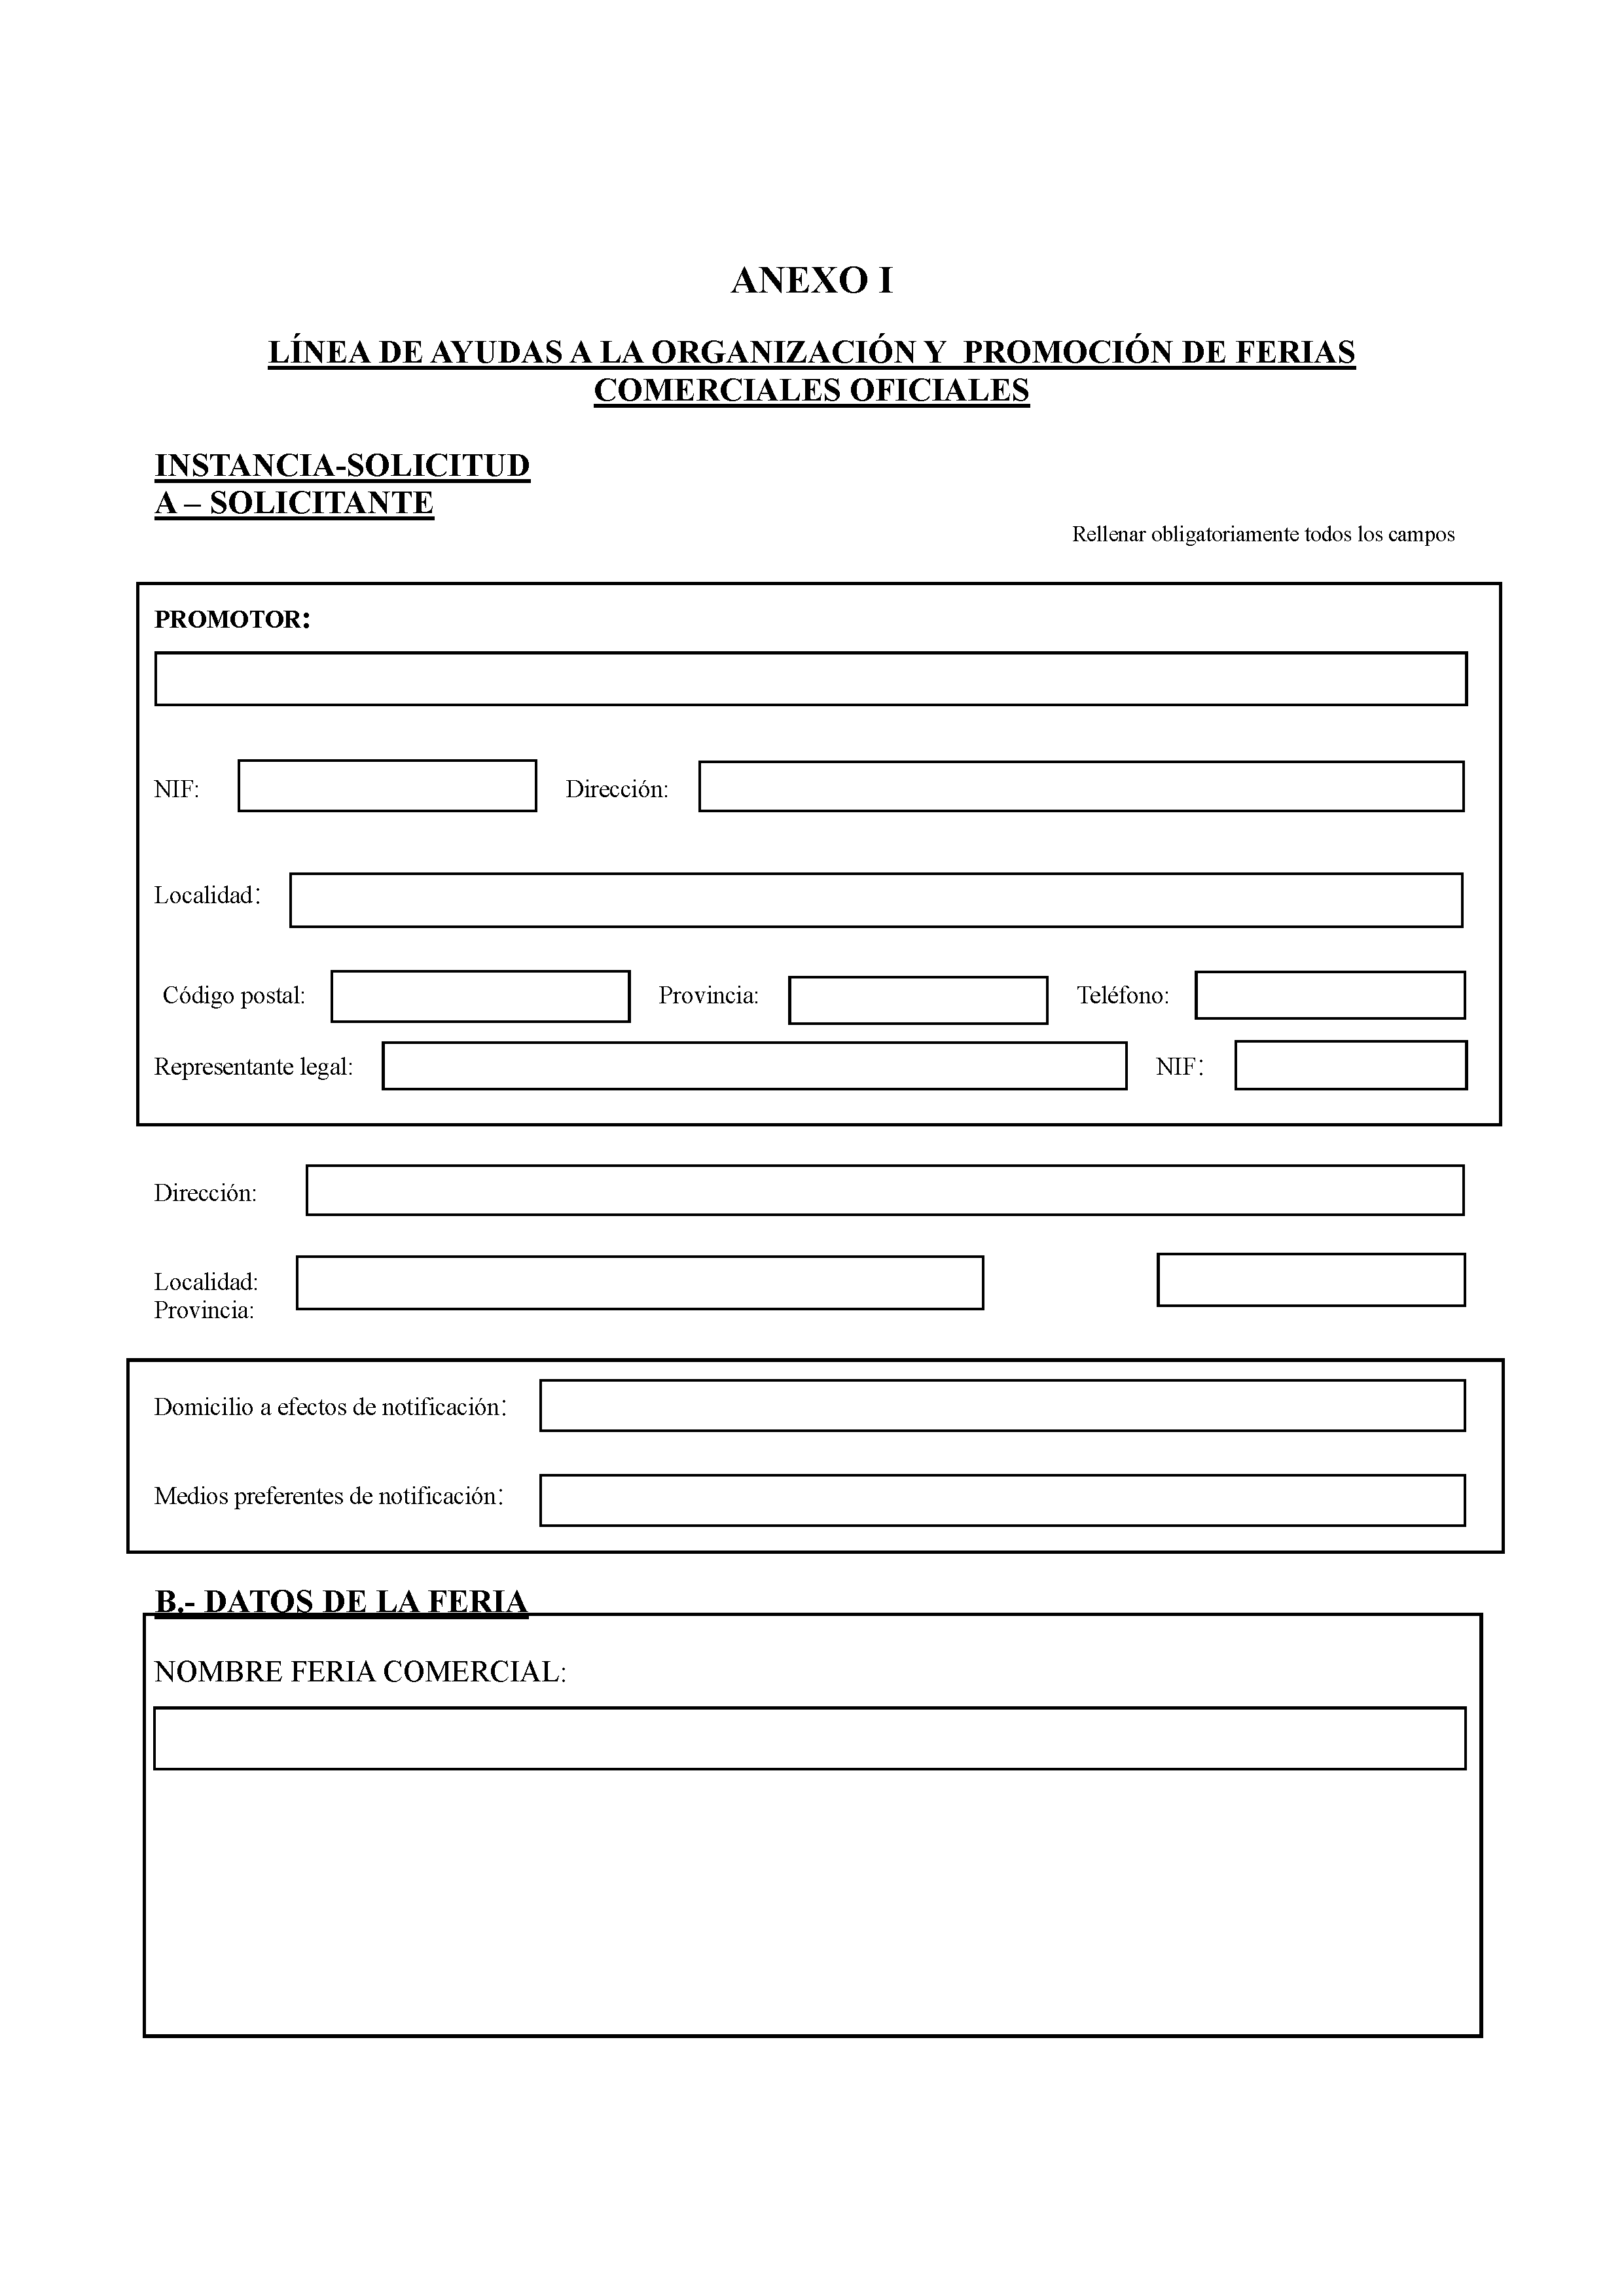 ANEXO I LINEA DE AYUDAS A LA ORGANIZACION Y PROMOCION DE FERIAS COMERCIALES OFICIALES Pag 1